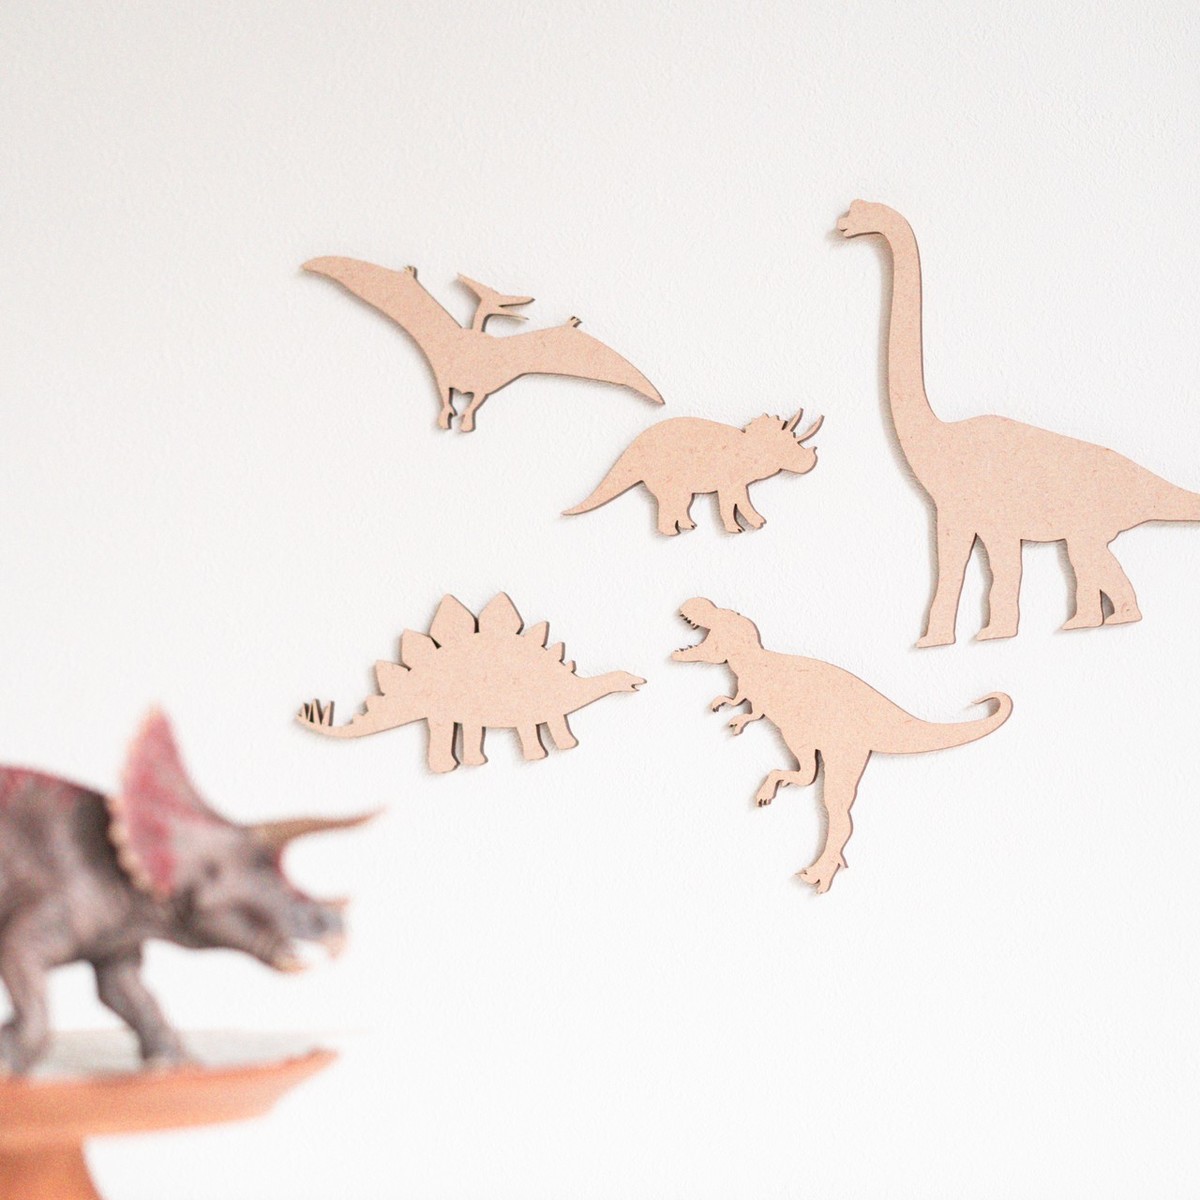 楽天市場 木製 恐竜 レター バナー ガーランド 誕生日 飾り 恐竜 ダイナソー グッズ ベビー キッズ イラスト セット ティラノサウルス Tレックス プテラノドン ブラキオサウルス トリケラトプス ステゴサウルス おもちゃ 玩具 1歳 2歳 3歳 遊び 趣味 子供 好き